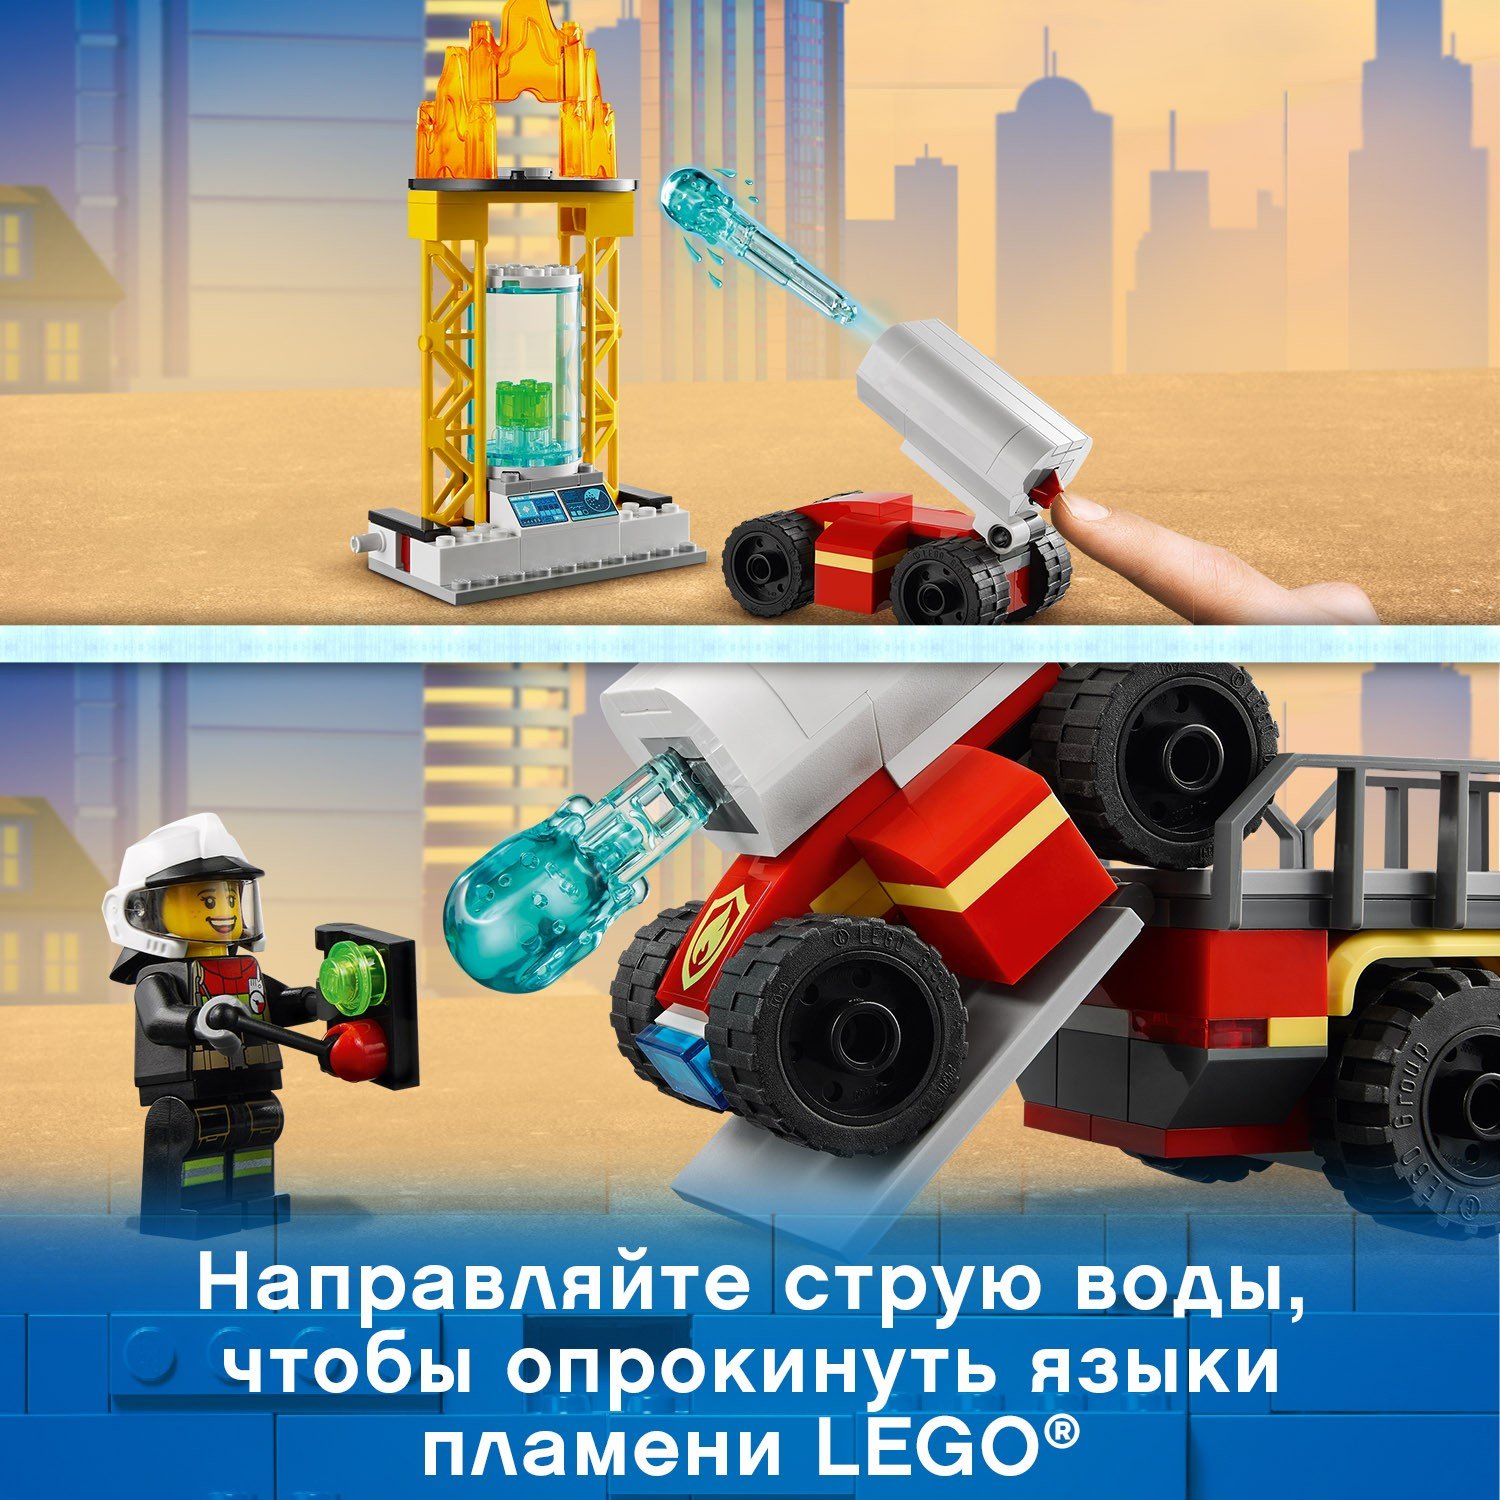 Конструктор LEGO City 60282 Команда пожарных